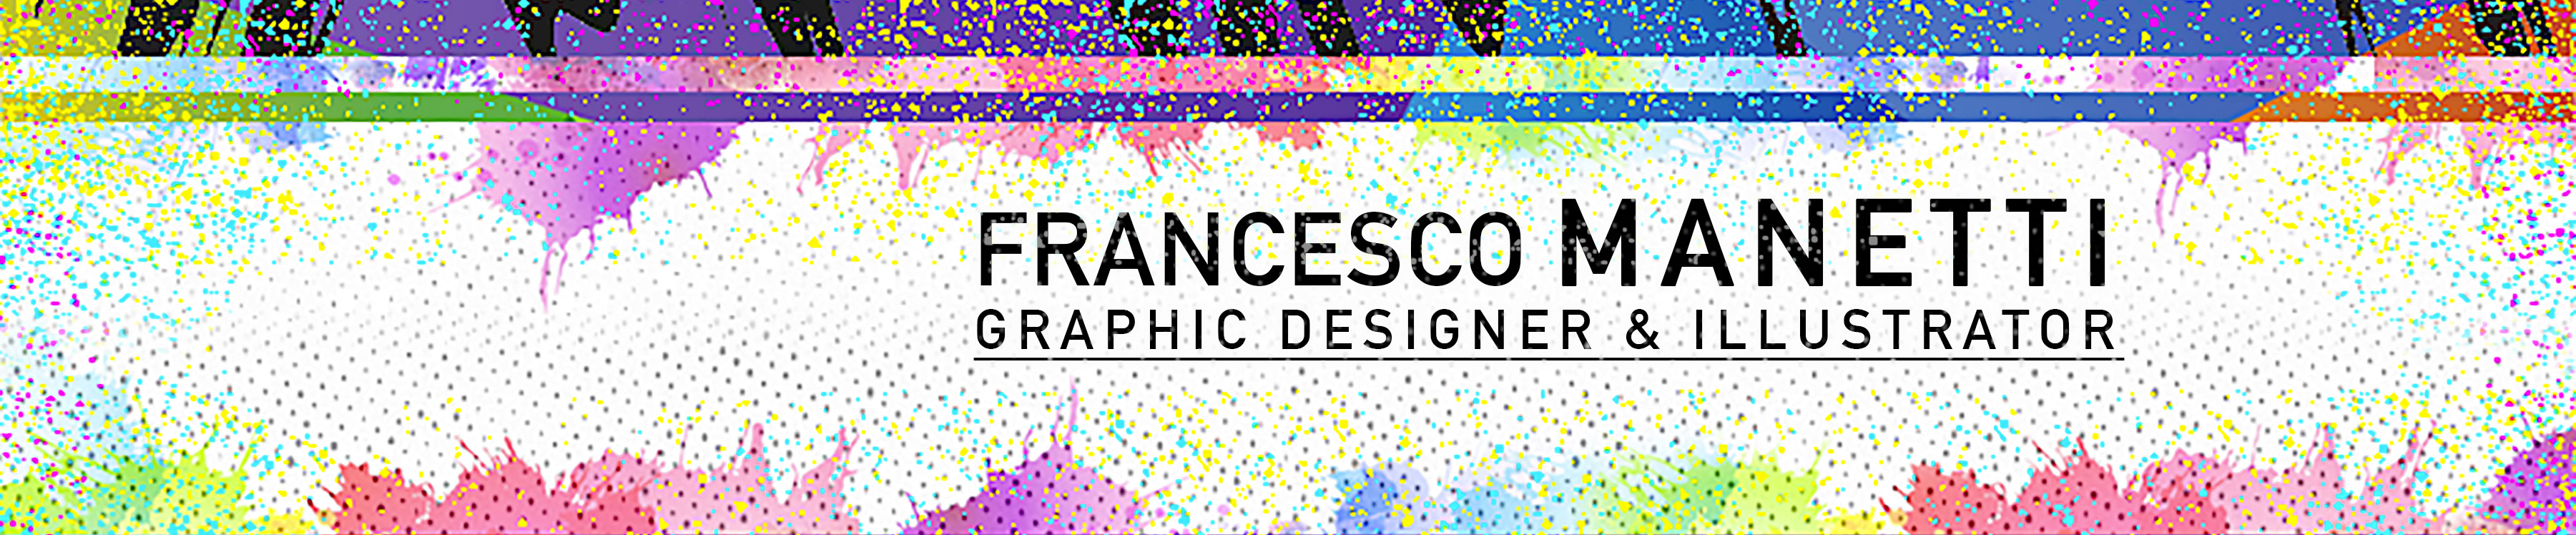 Francesco Manetti's profile banner